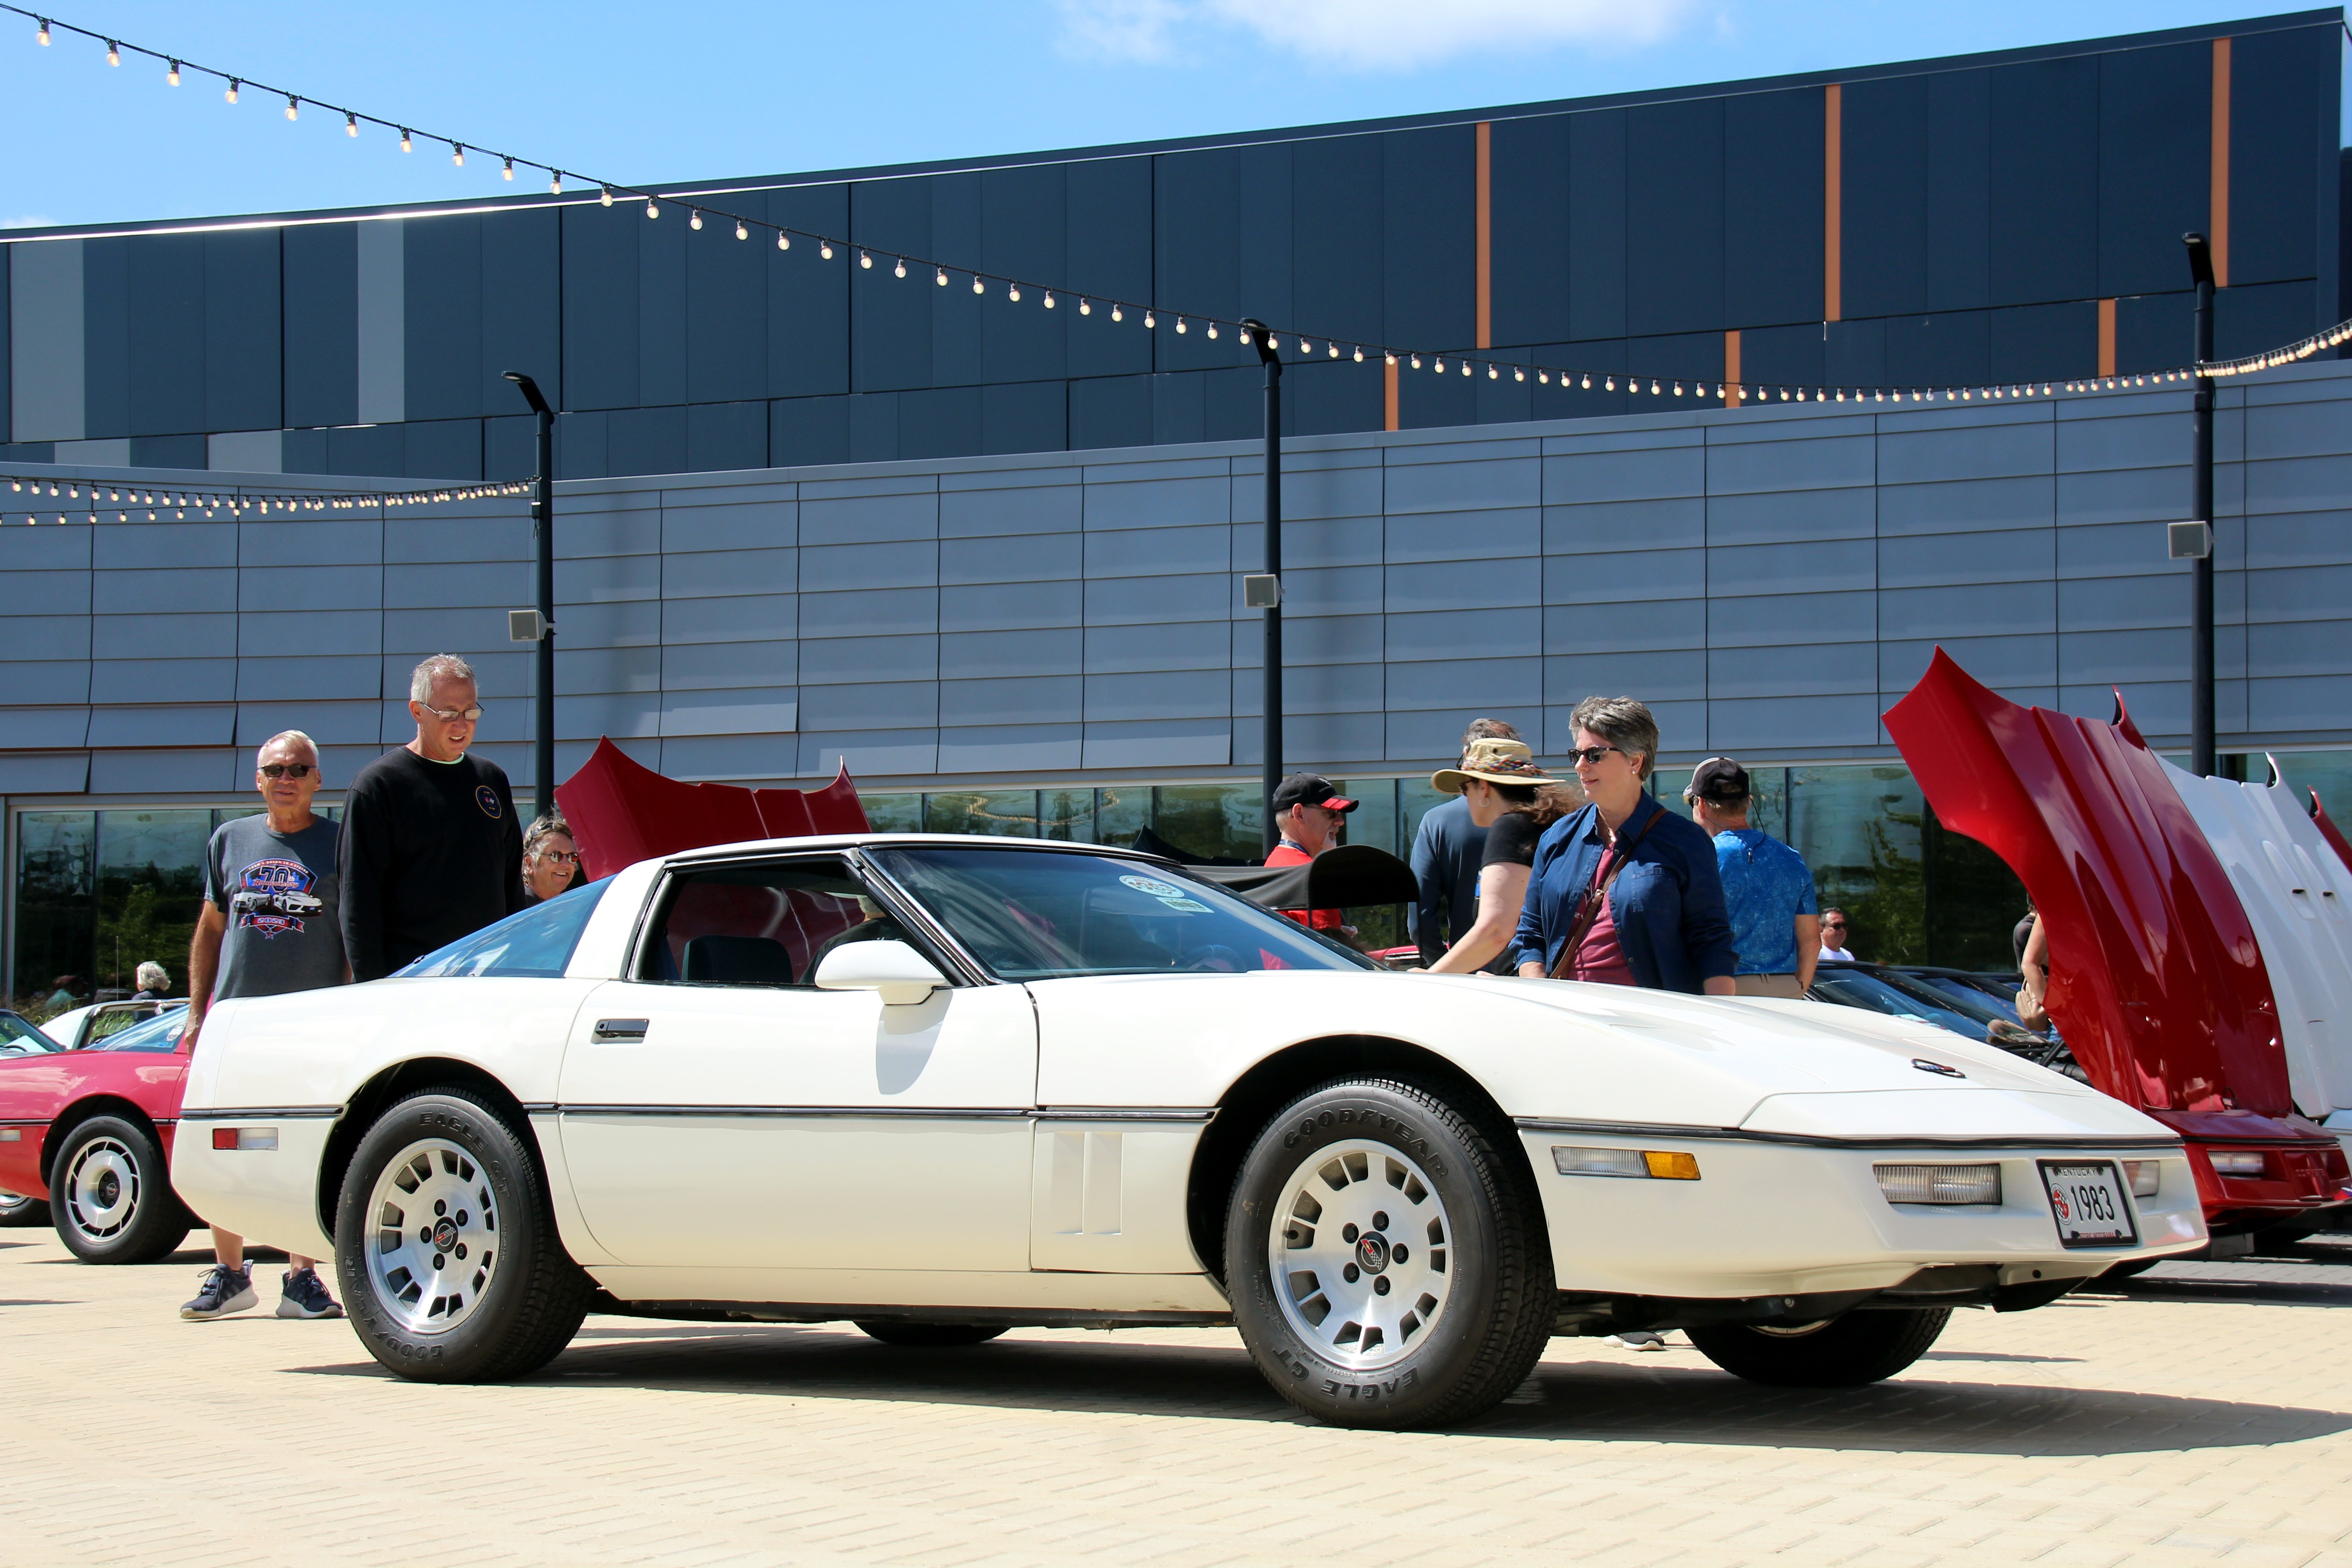 One-of-None 1983 Corvette Headlines 70th Anniversary Corvette Celebration at M1 Concourse